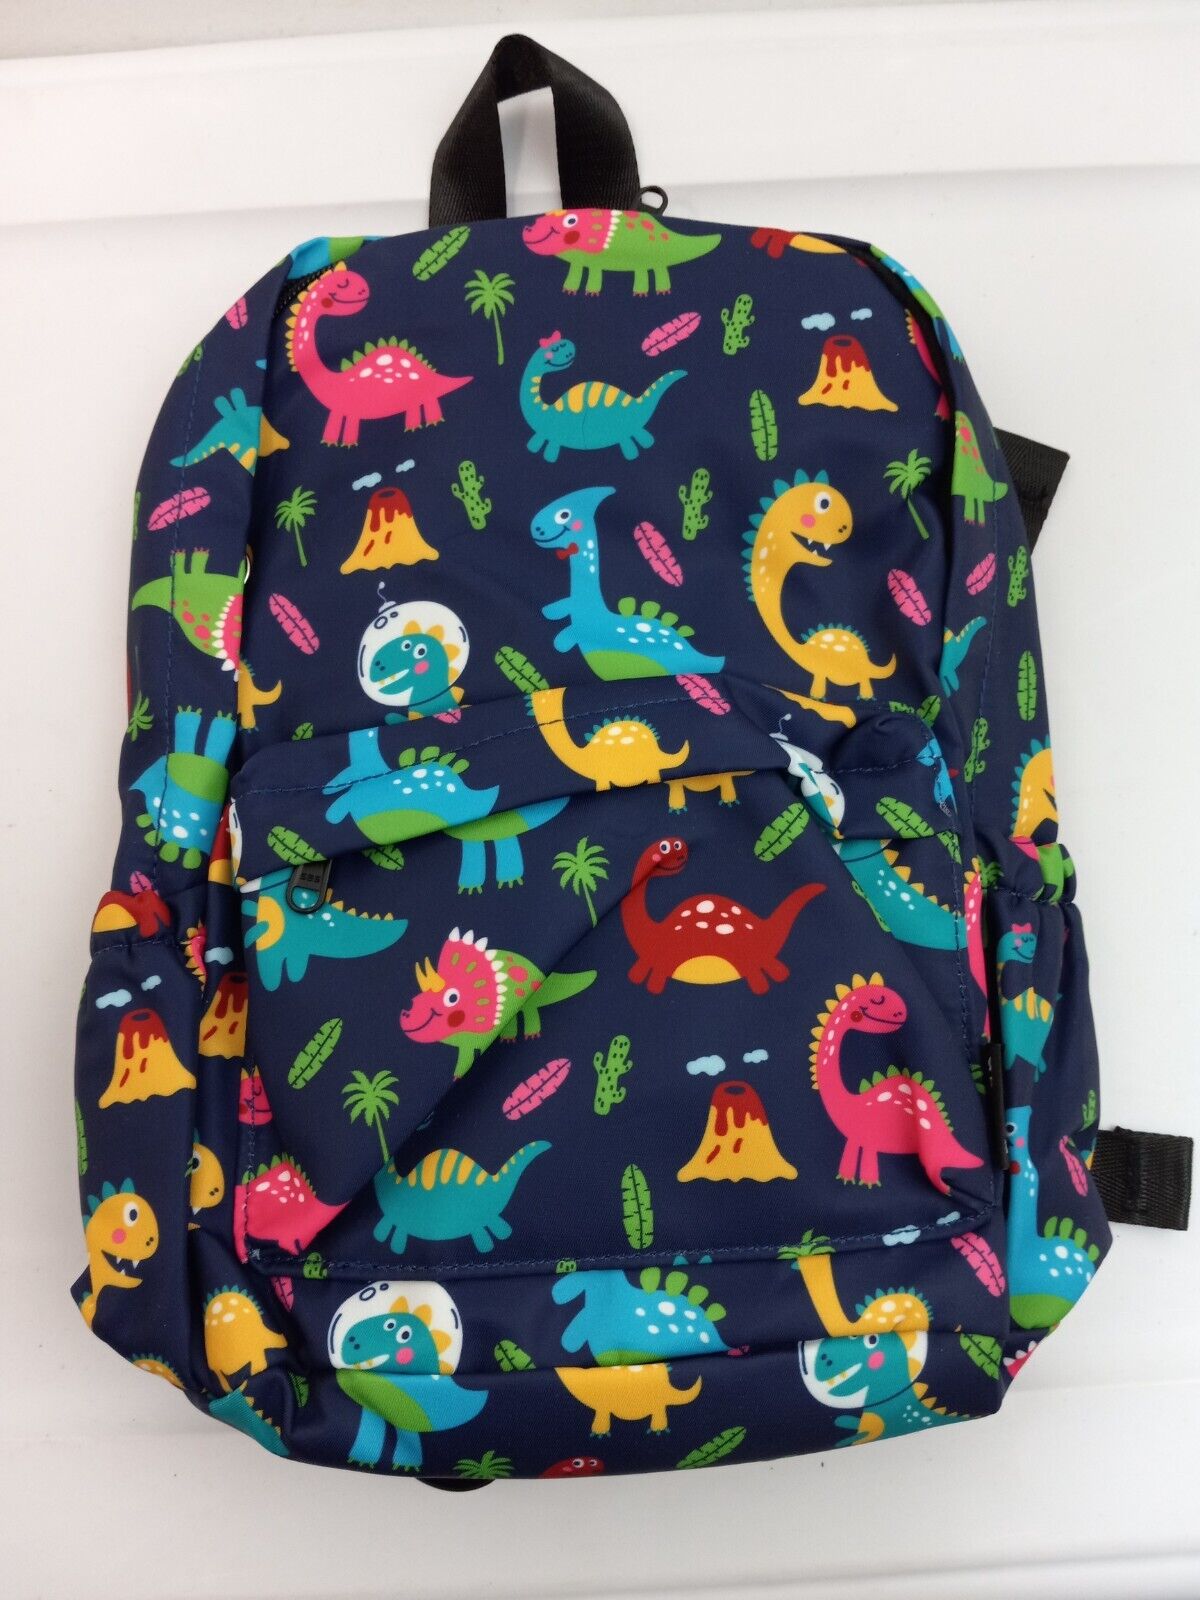 Dinosaur Themed Abshoo Backpack for Kids NWT